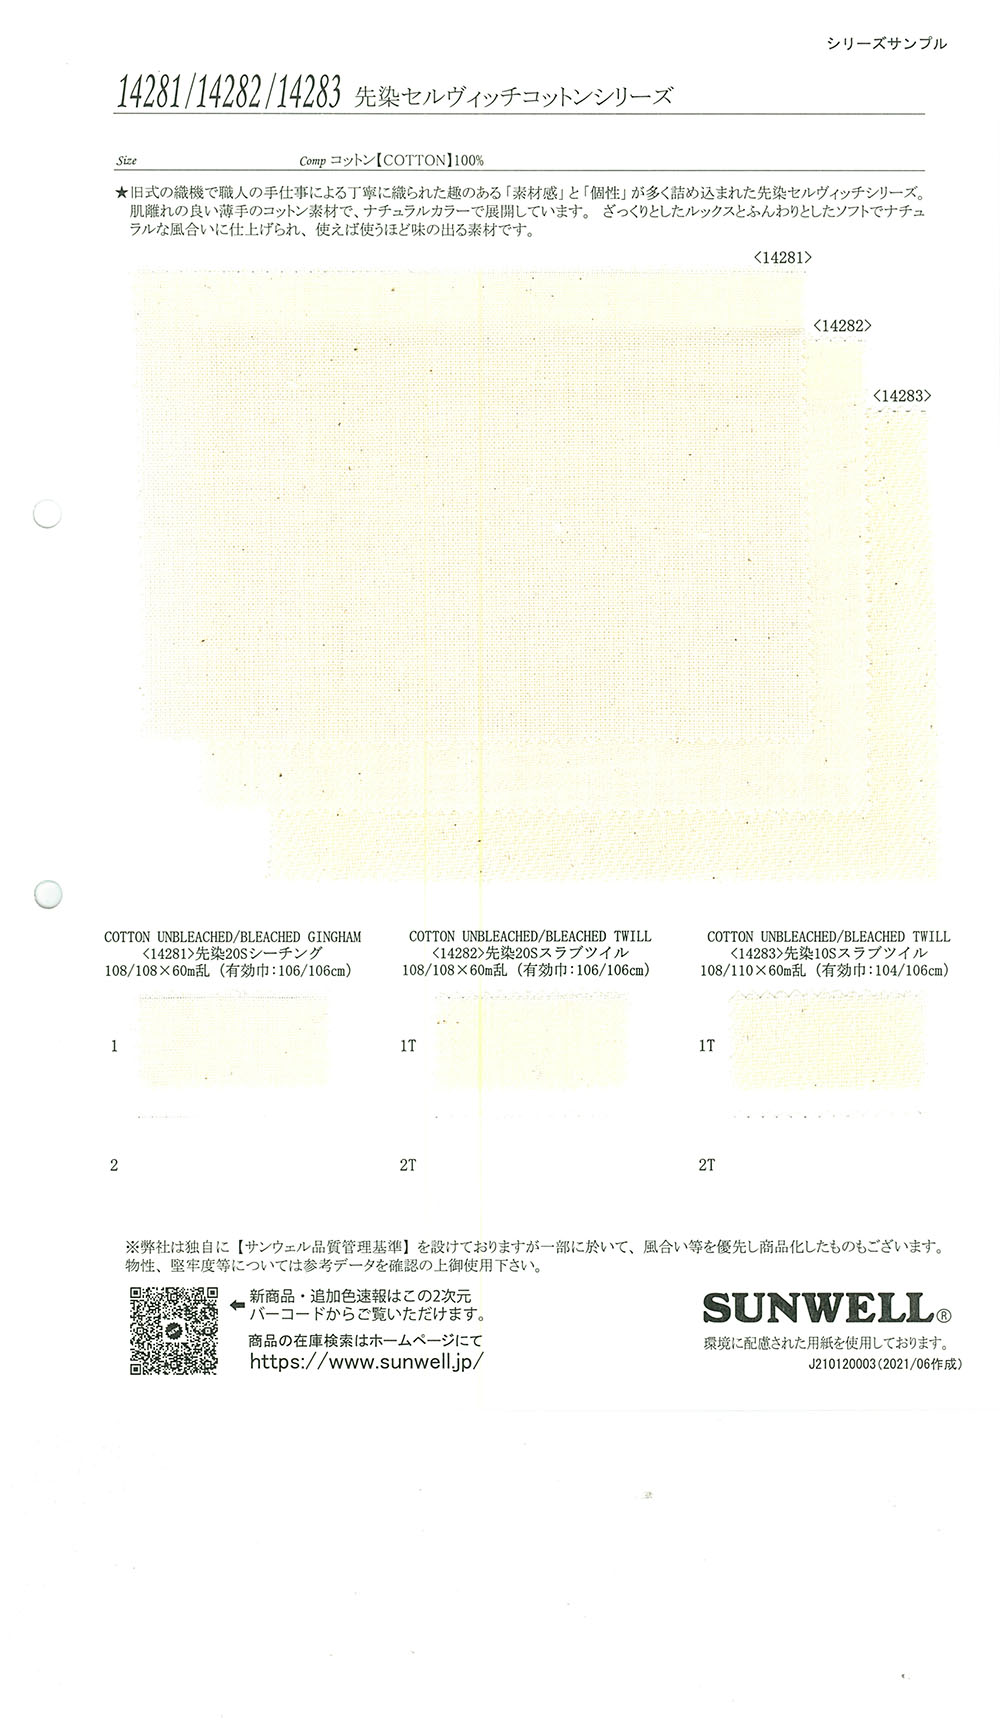 14281 セルヴィッチコットンシリーズ 先染20sシーチング[生地] SUNWELL(サンウェル)